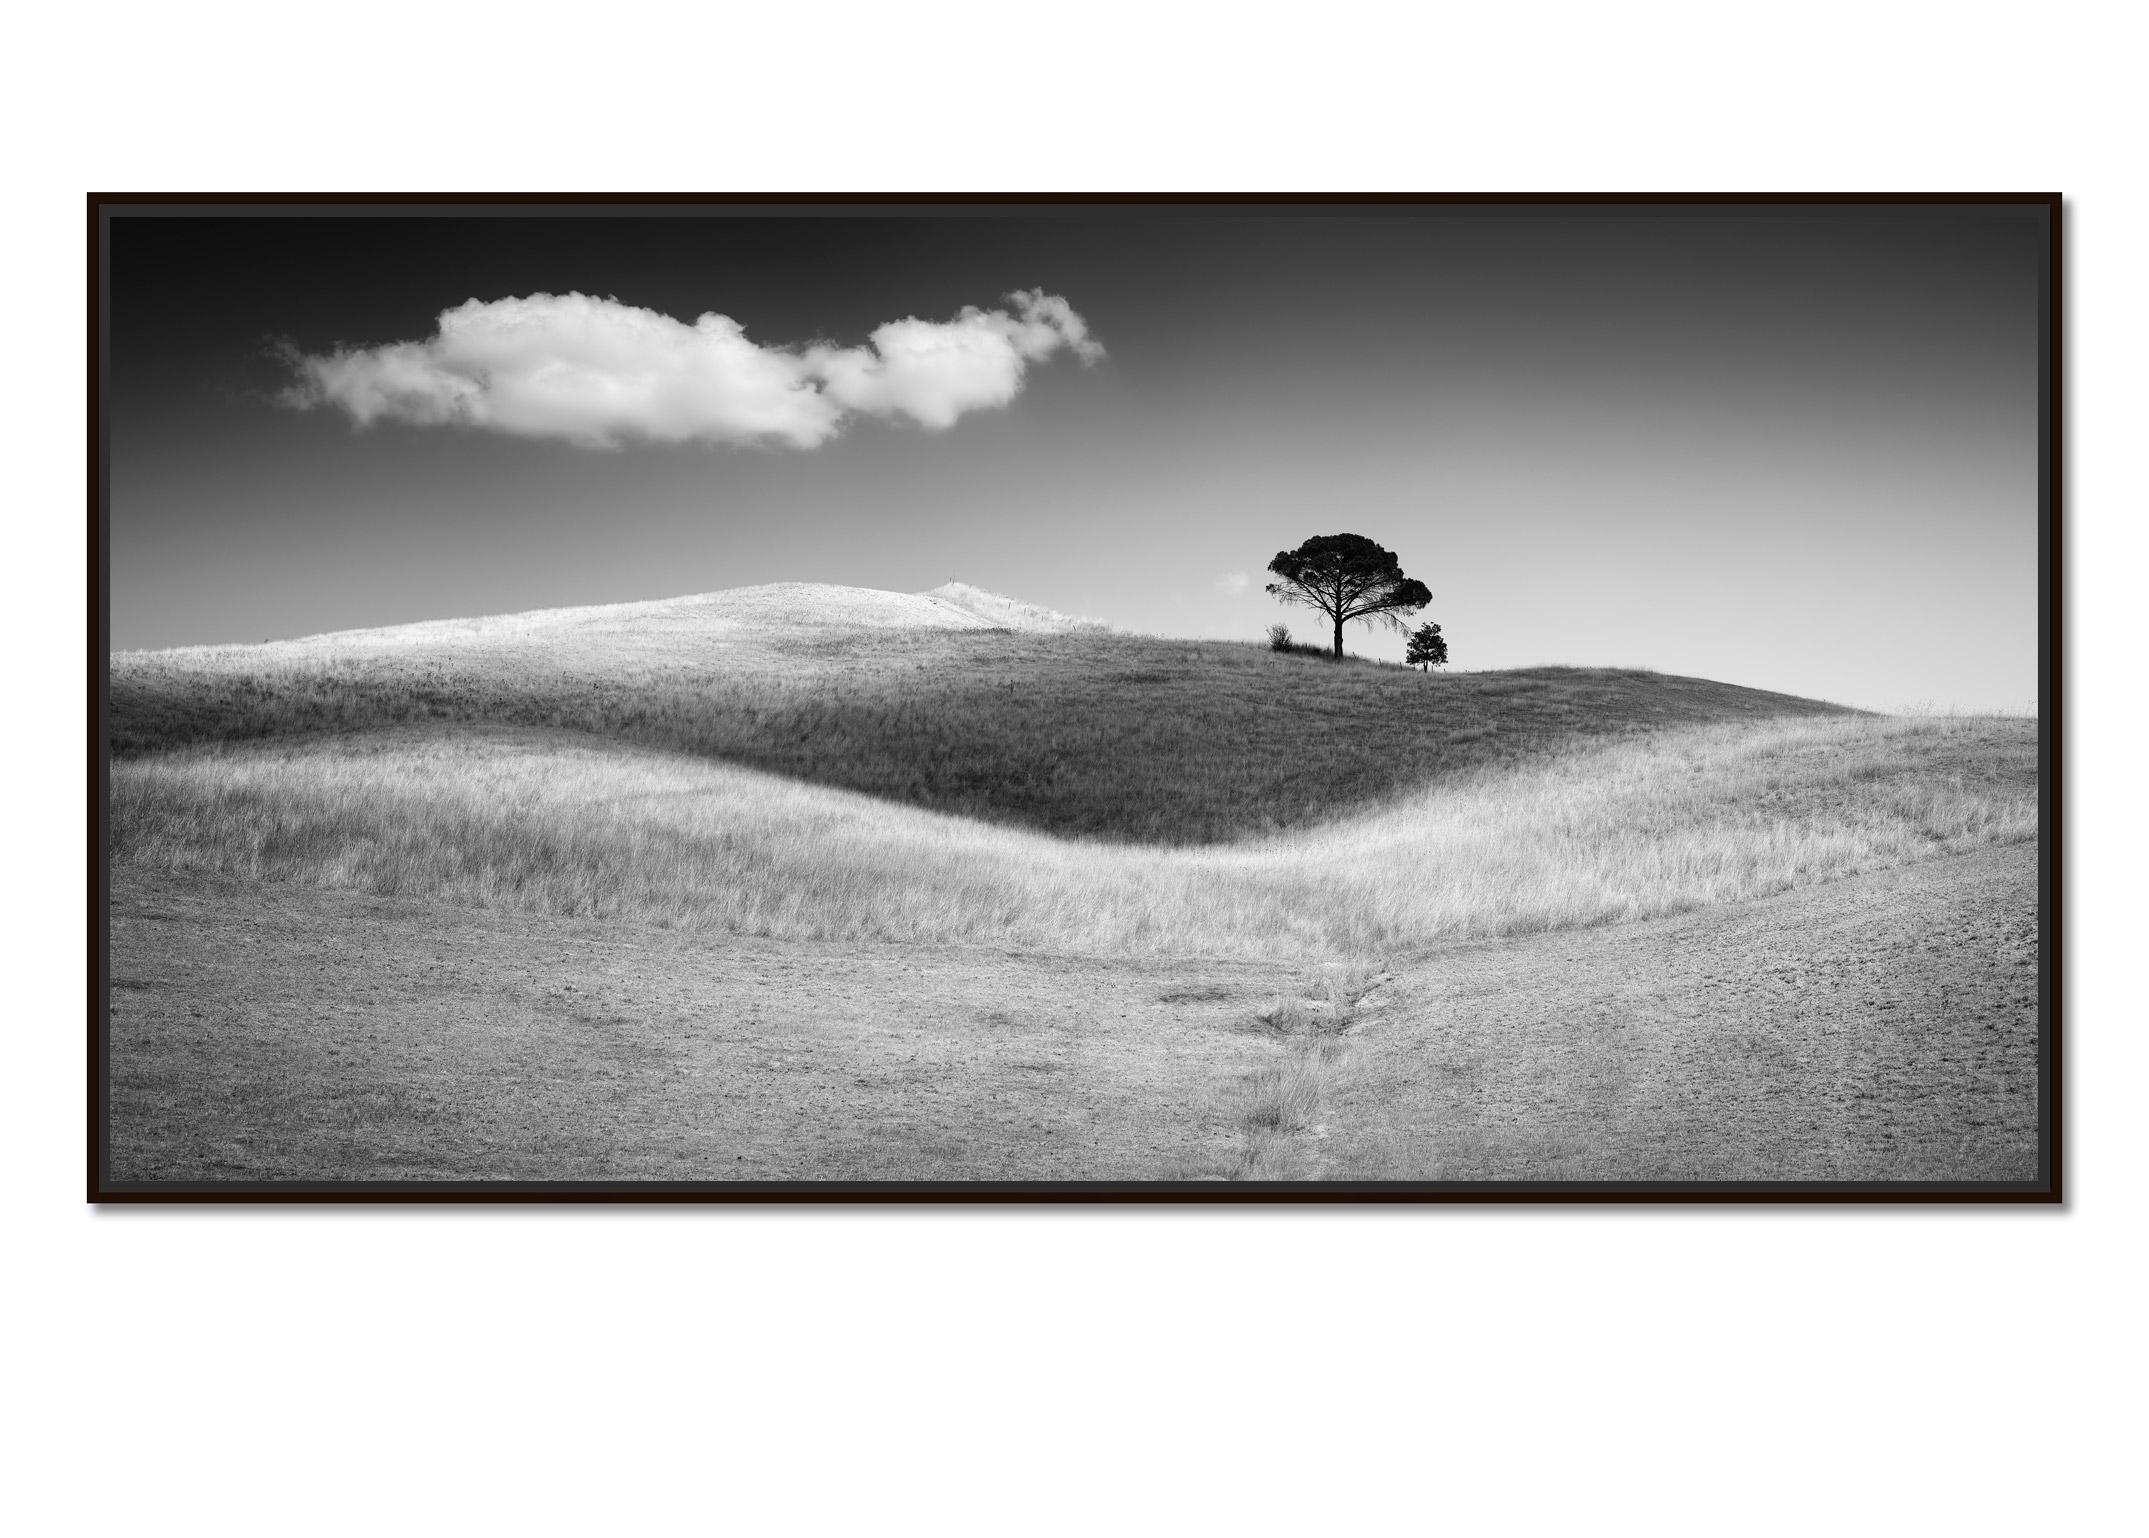 Italienische Stein Kiefernholz, Toskana, Italien, Schwarz-Weiß-Kunstfotografie, Landschaft – Photograph von Gerald Berghammer